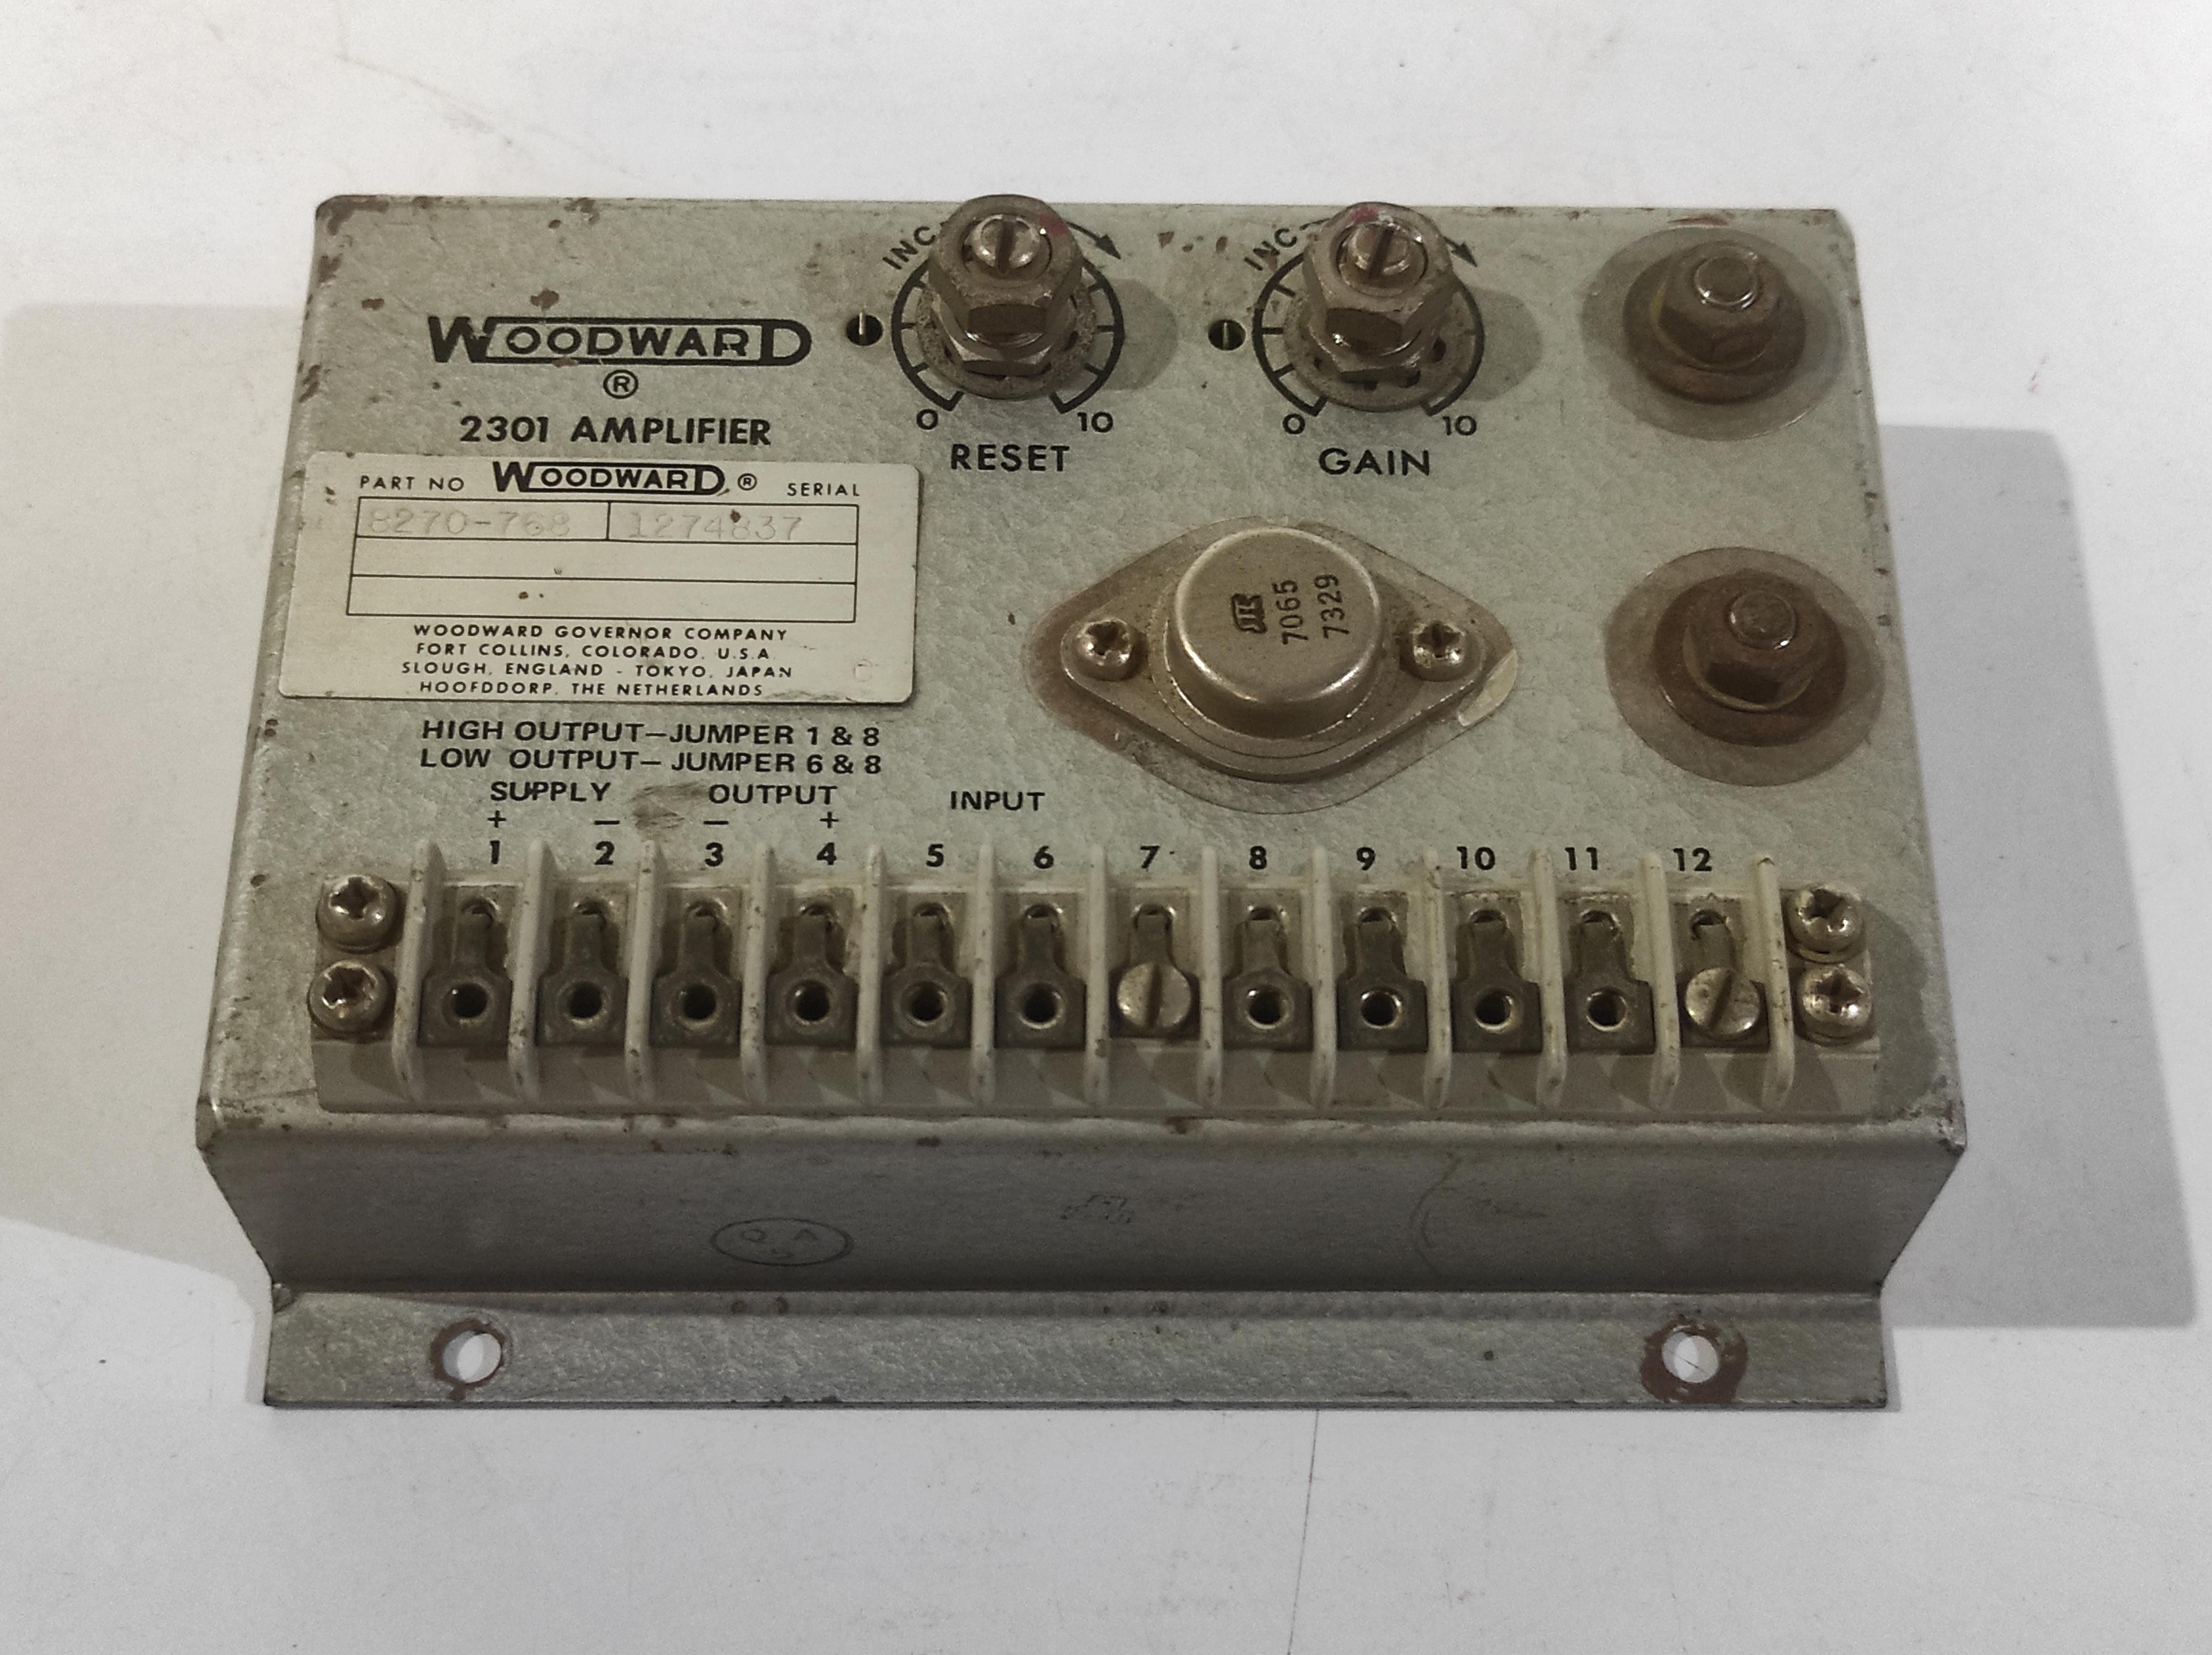 Woodward 8270-768 2301 Amplifier